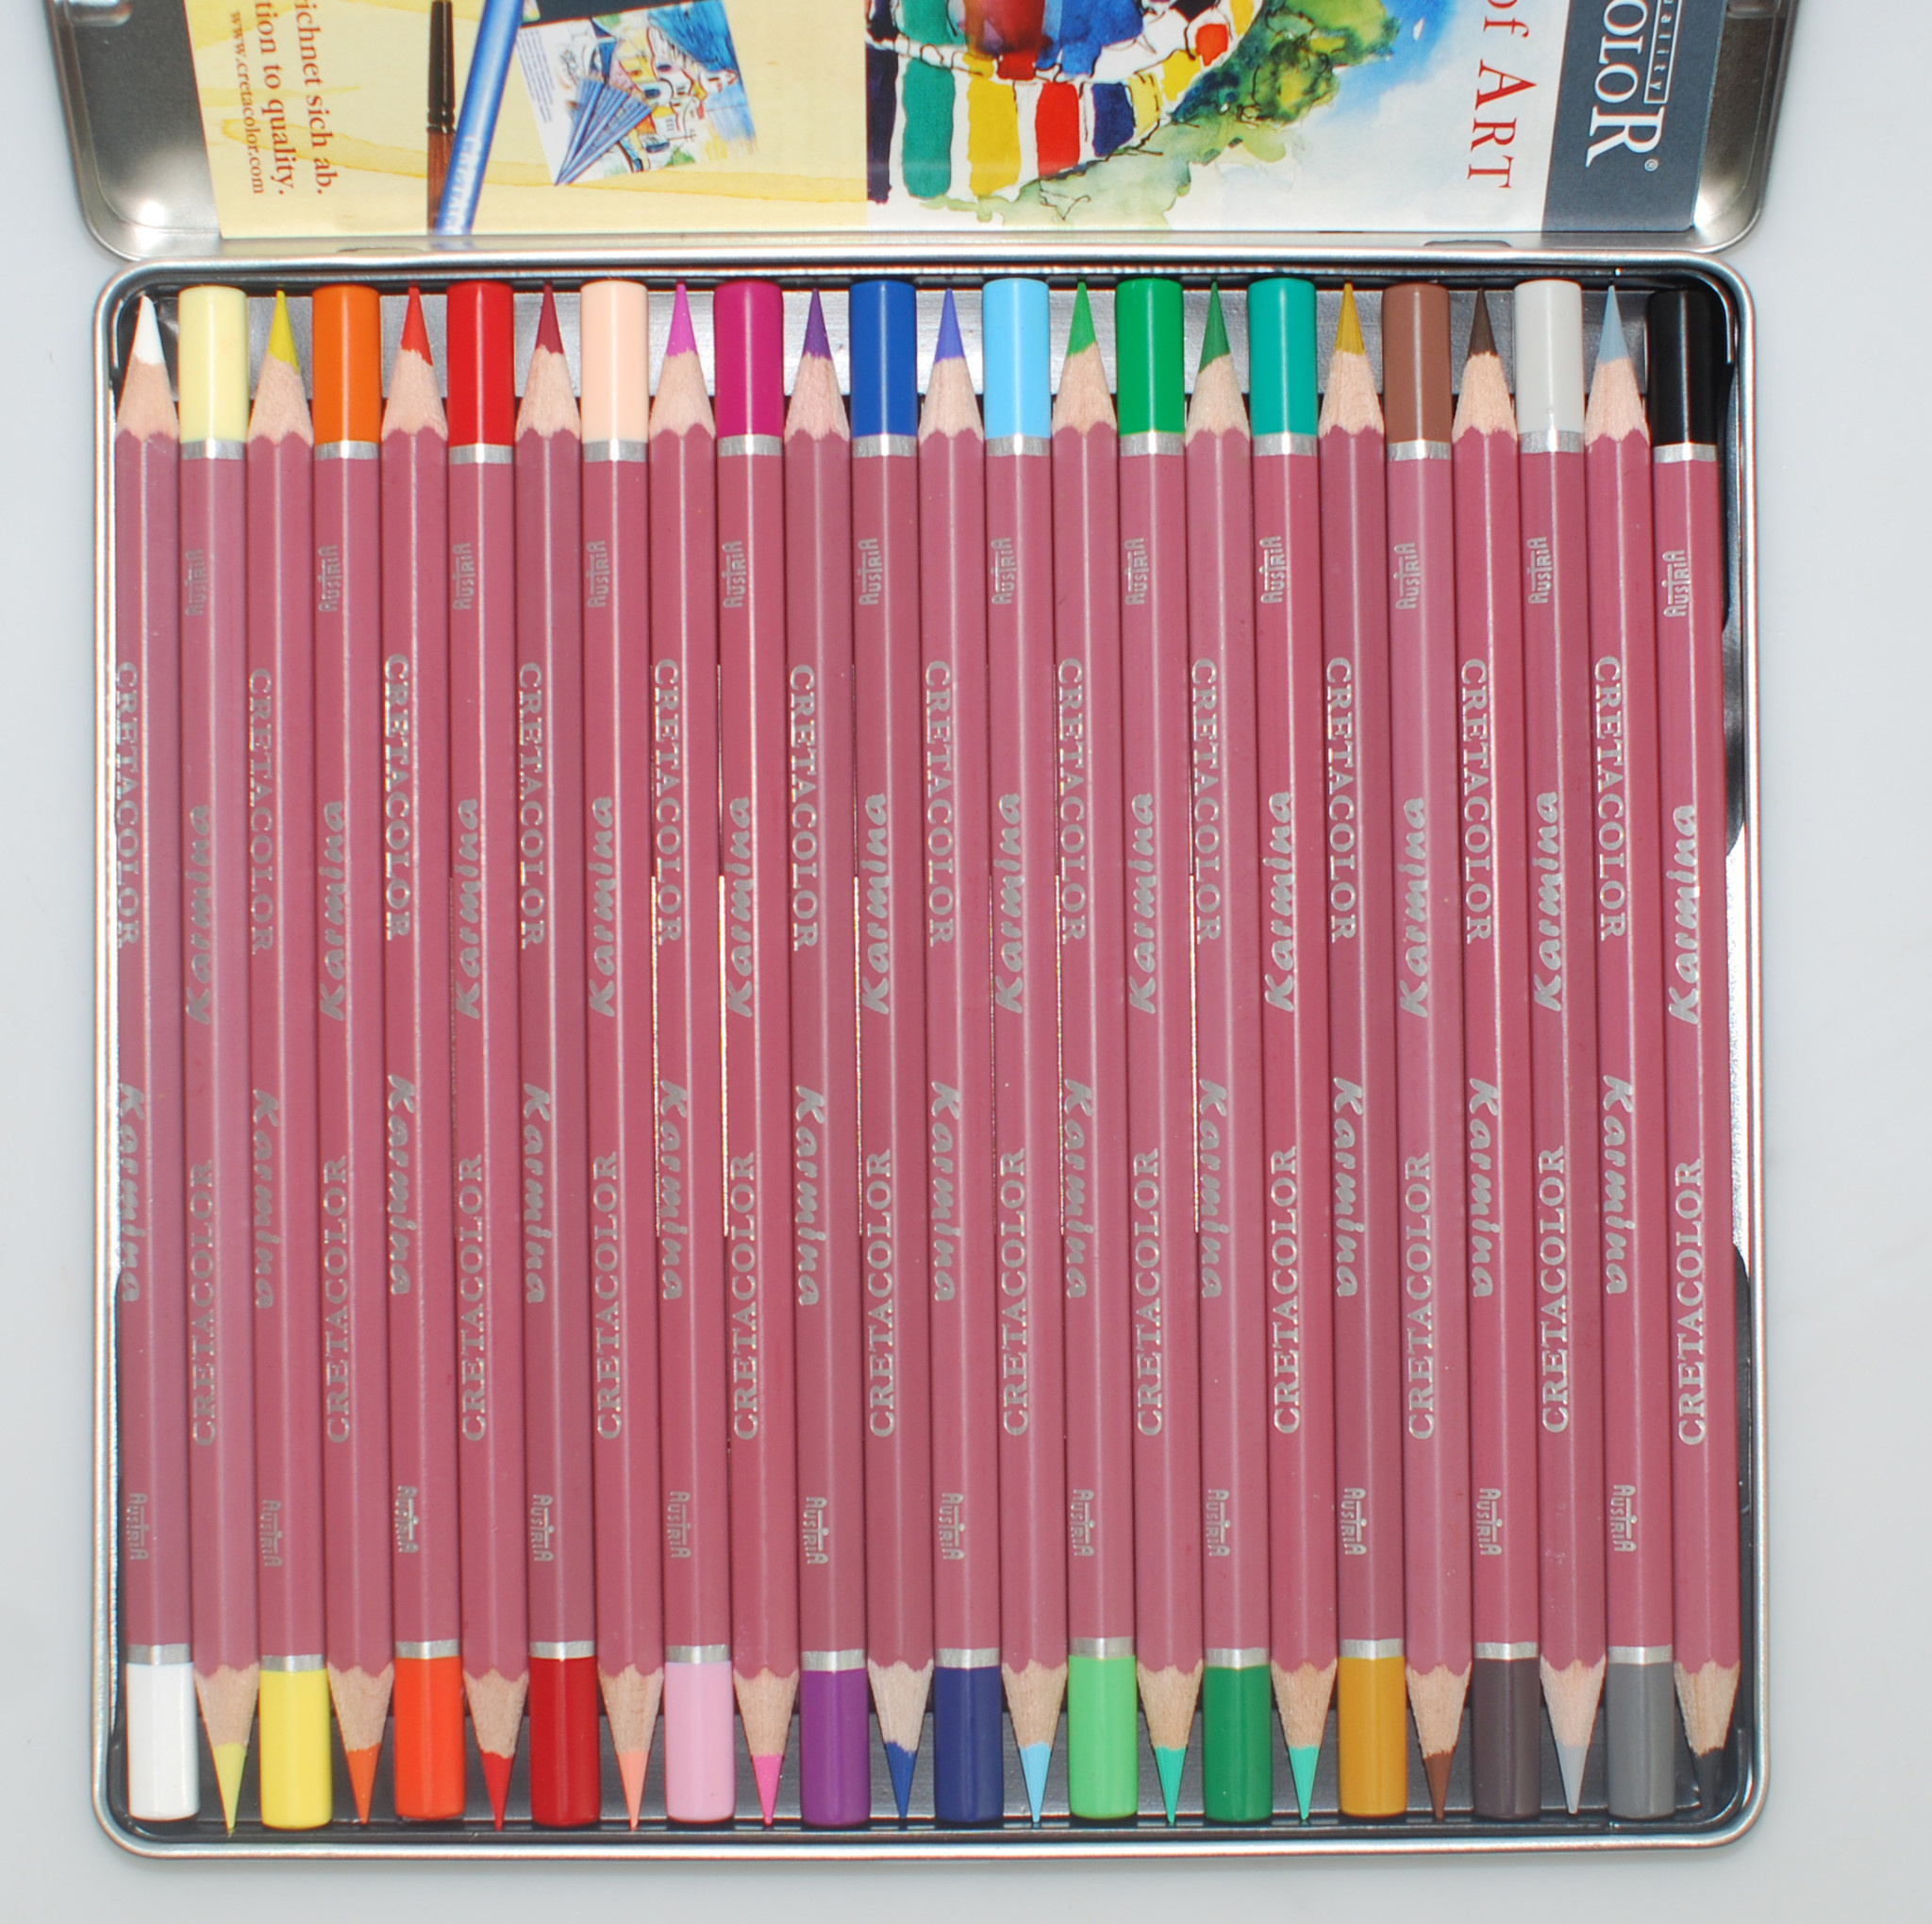 50 crayons de couleur métalliques pour le dessin